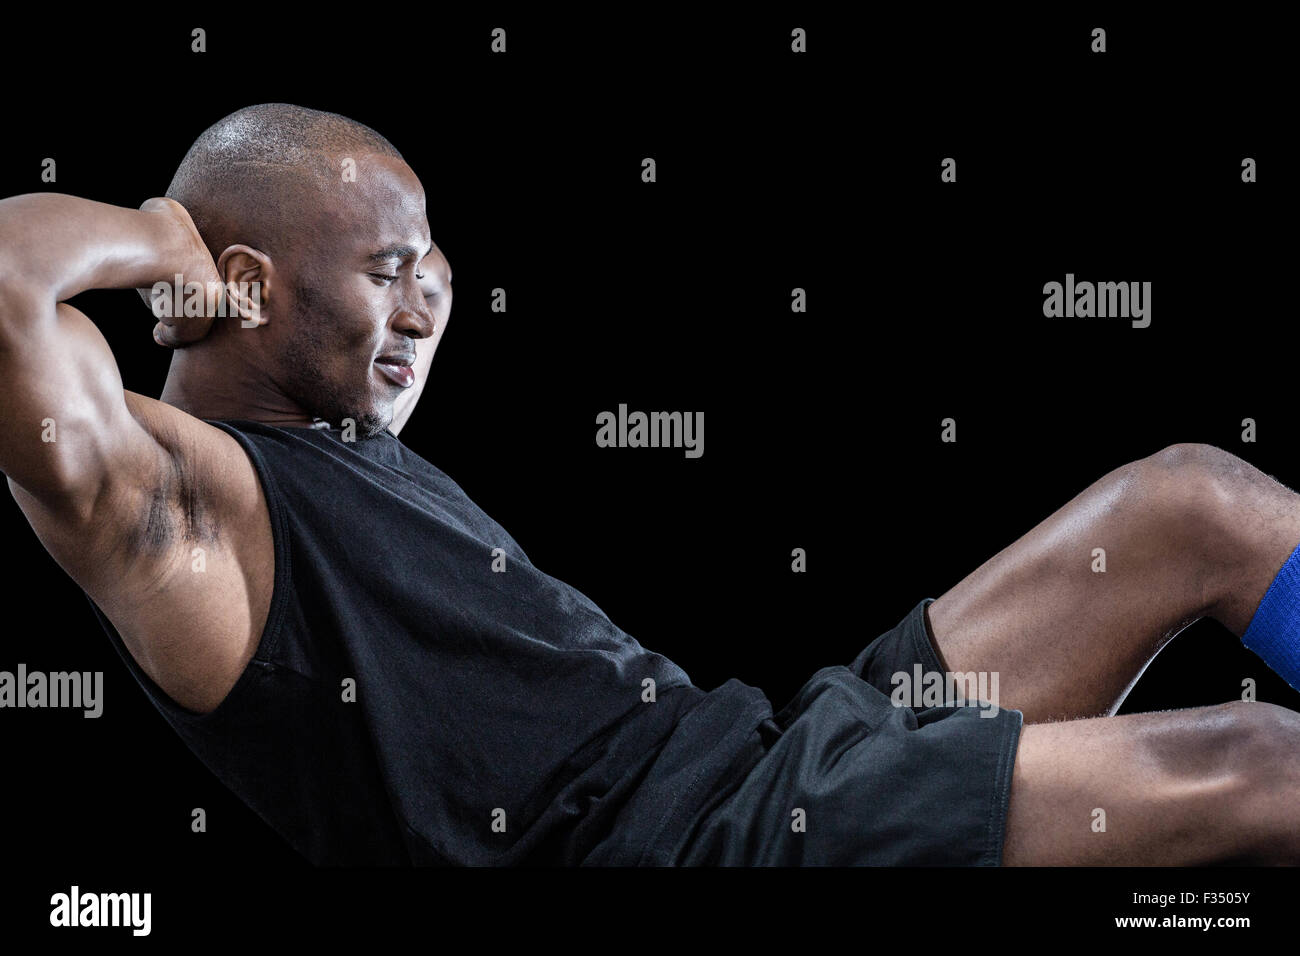 Hombre haciendo muscular sentarse ups con los ojos cerrados Foto de stock